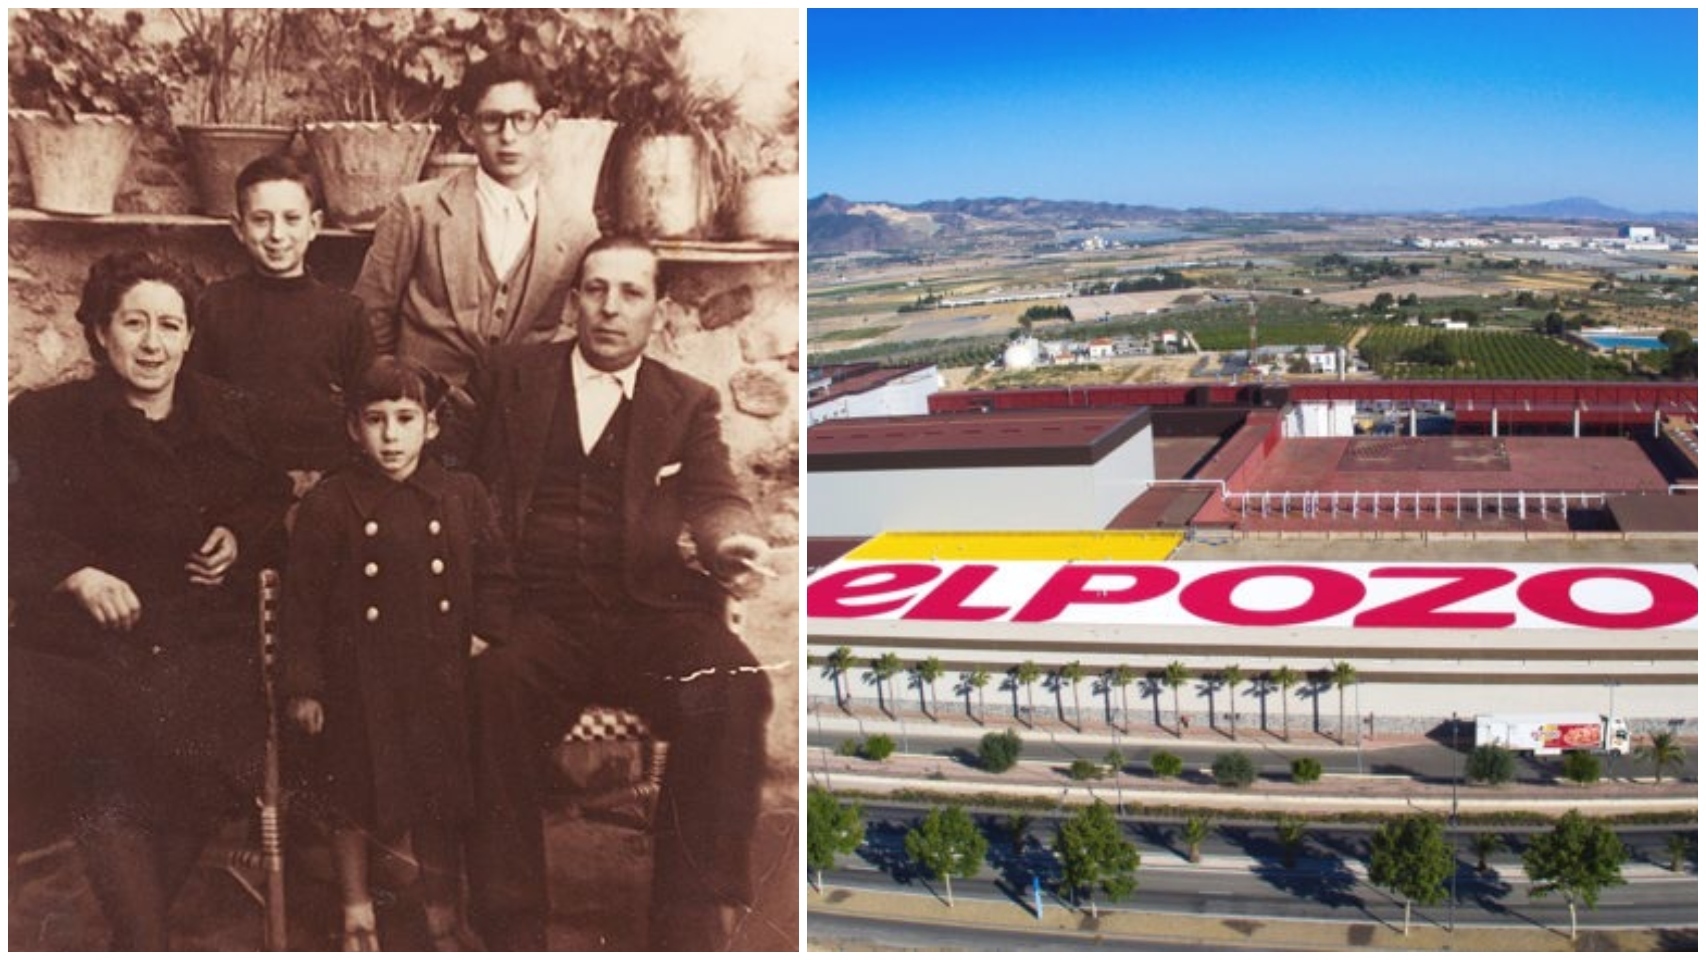 El fenómeno de ElPozo, única marca que gana a Coca-Cola en España: los tres hermanos dueños